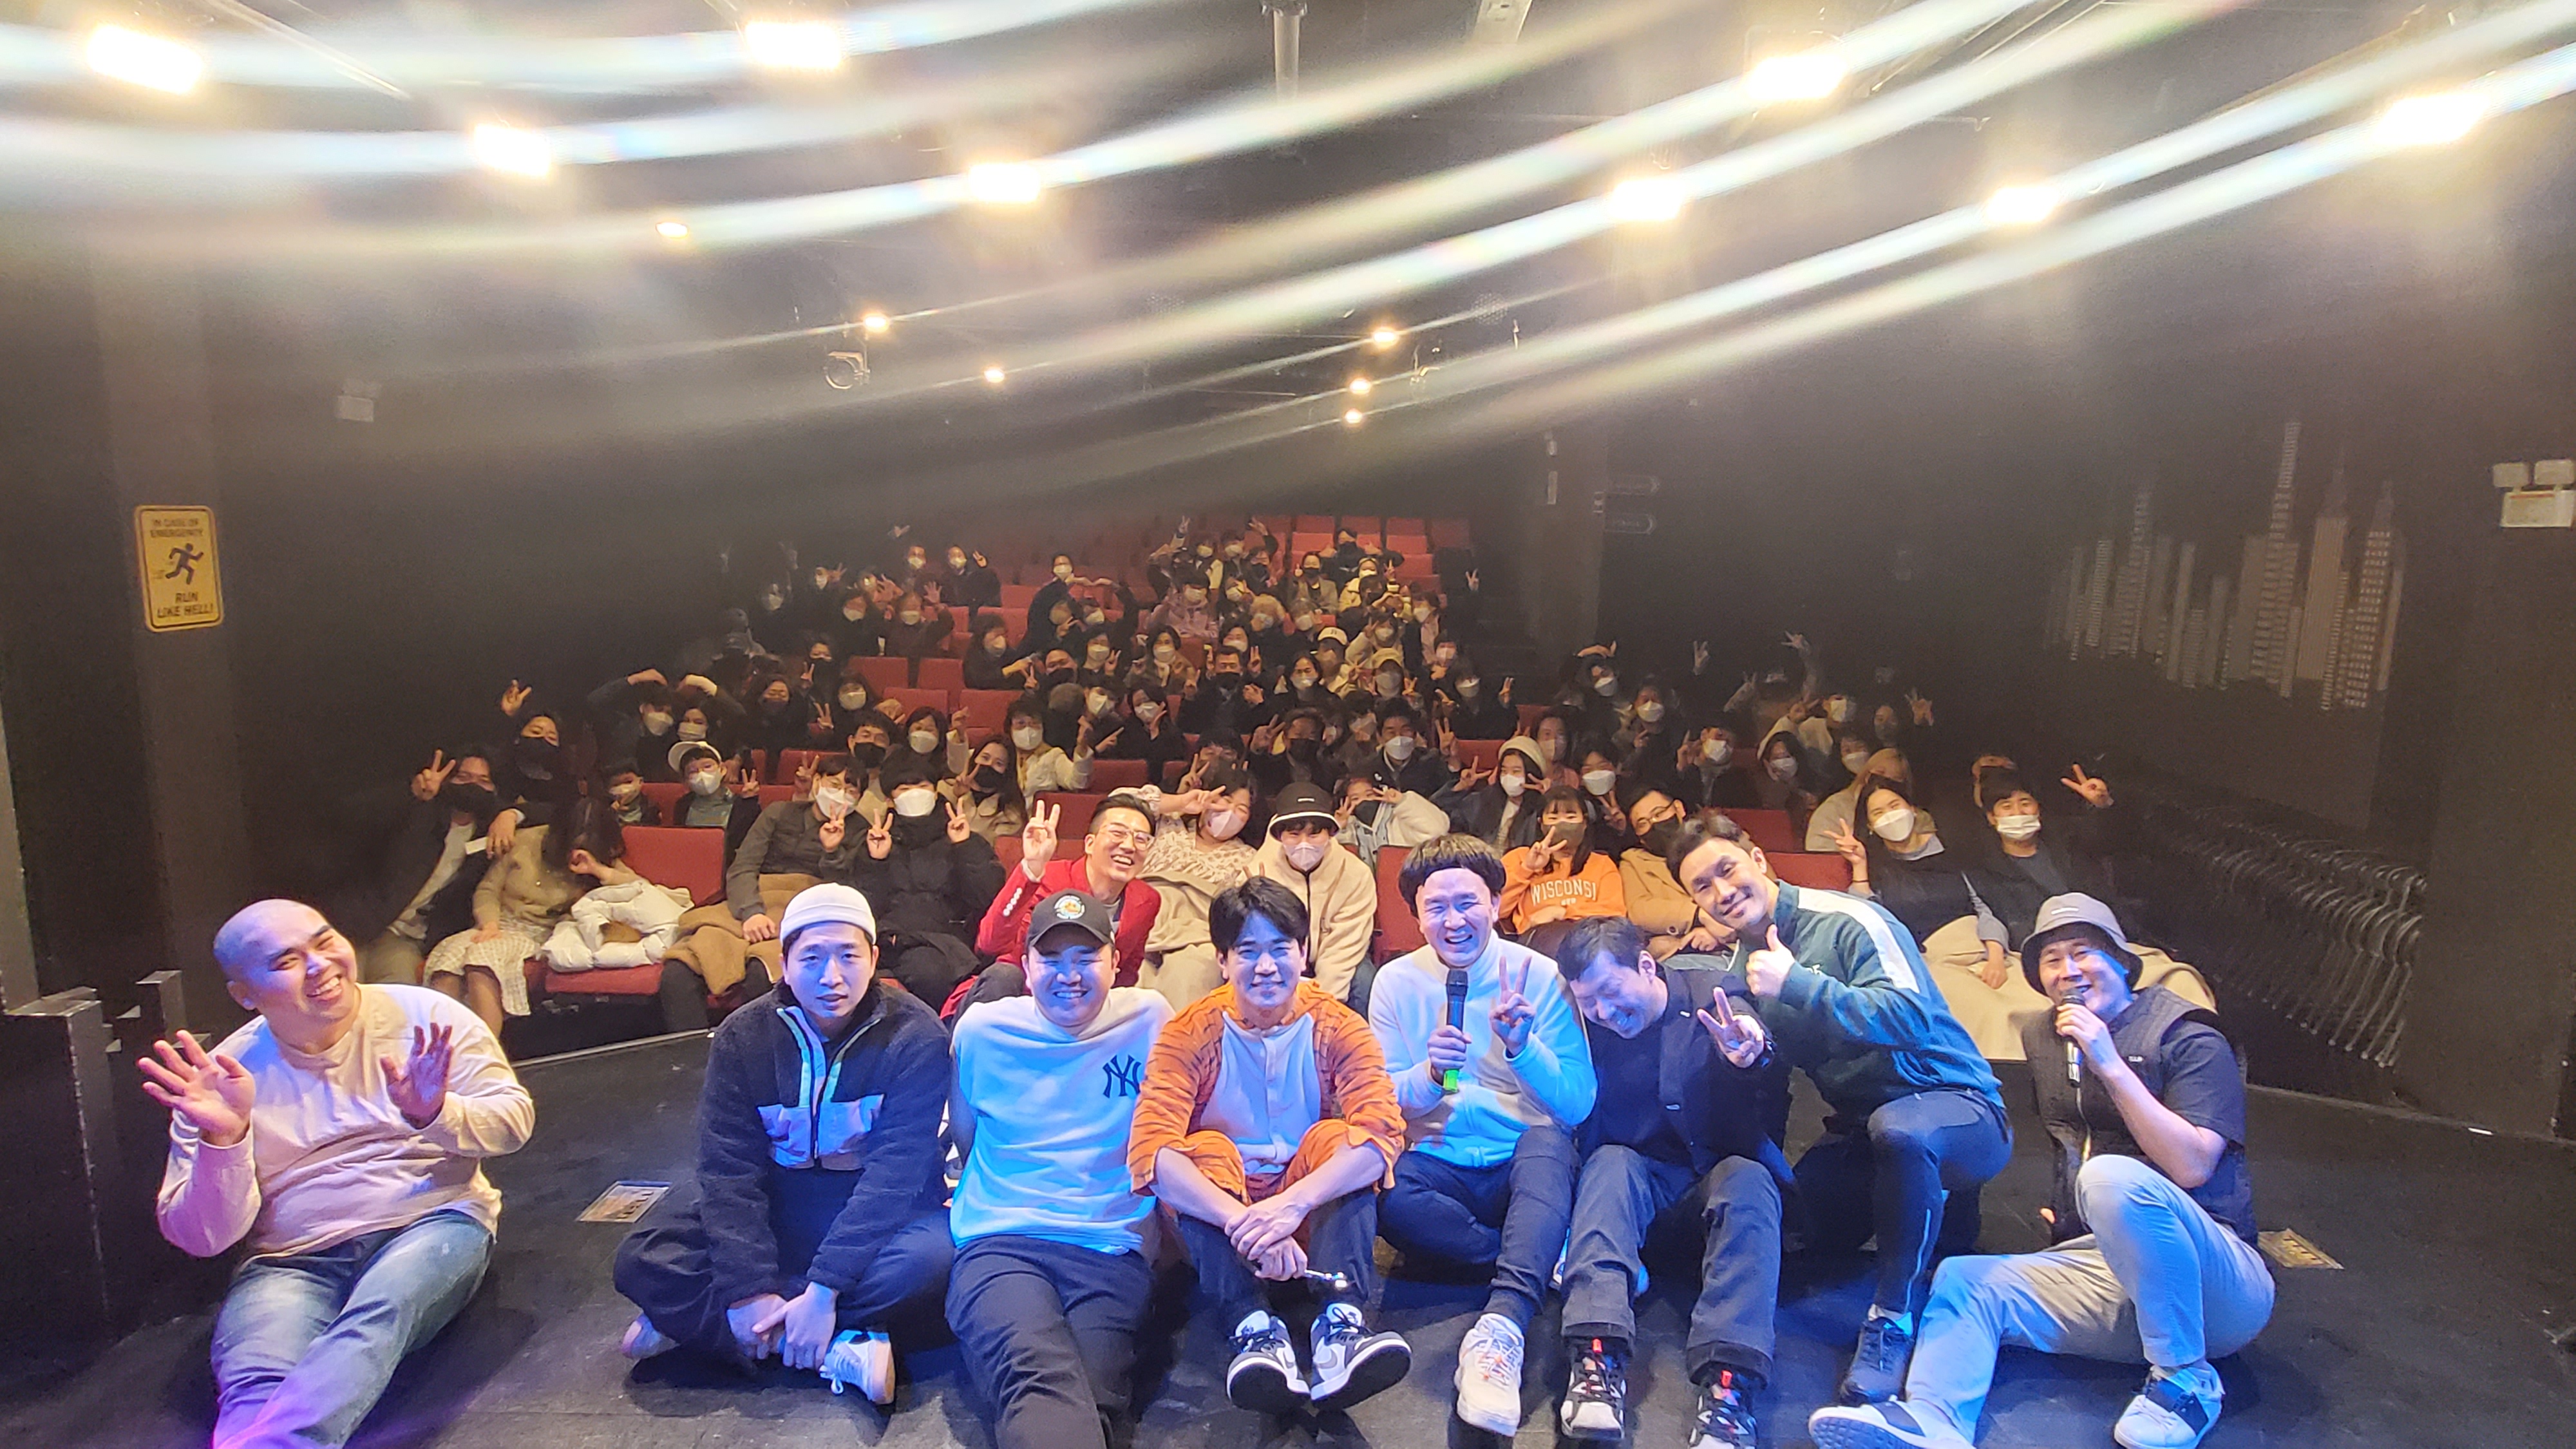 데일리경제, 비엠 소상공인 지원을 위한 문화예술 공연 개최